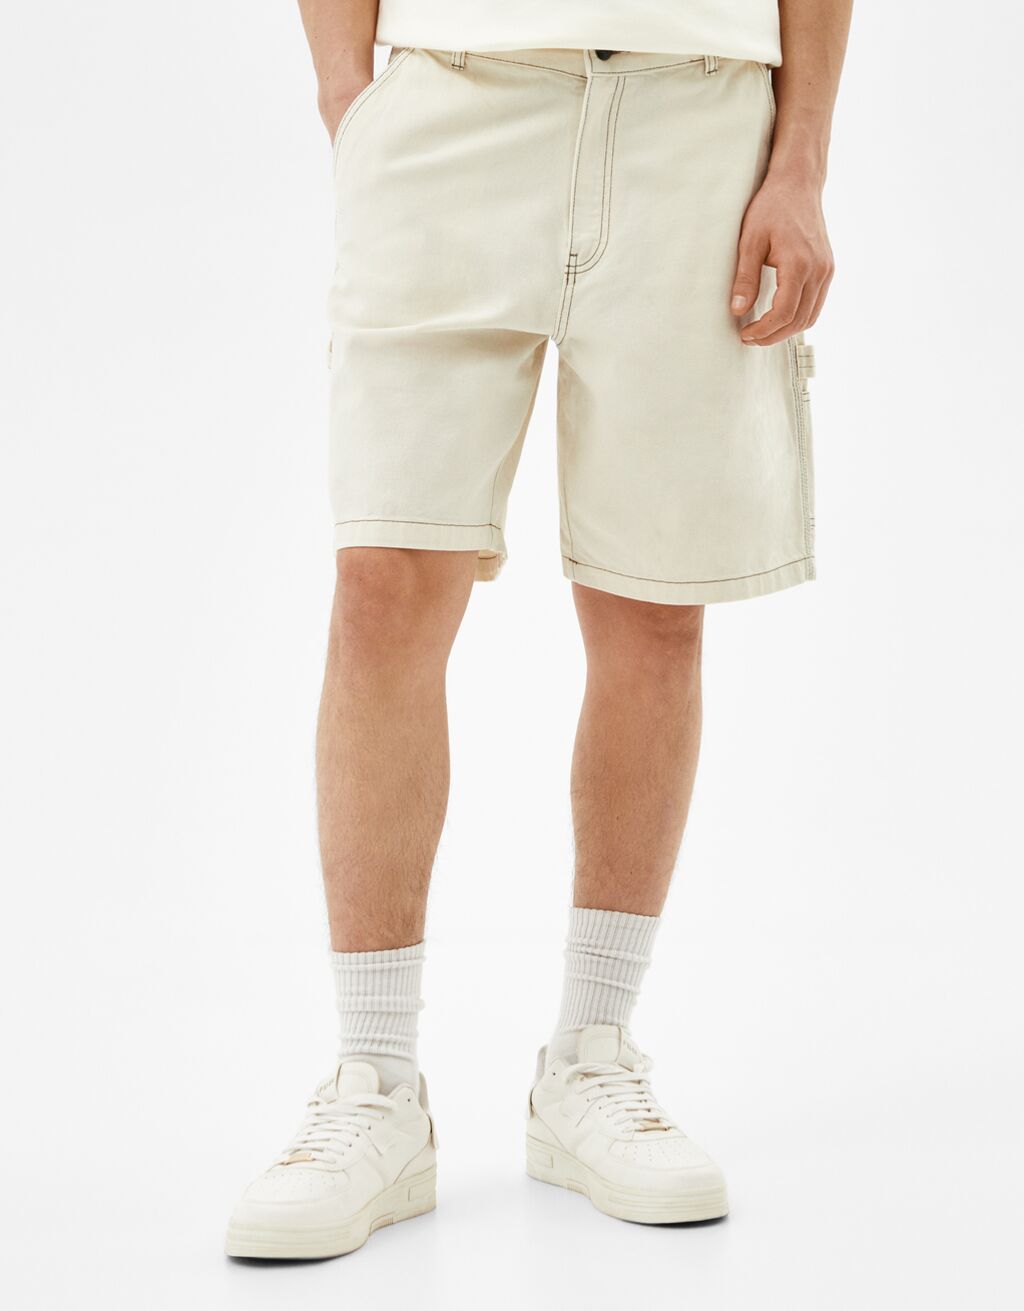 Pantallona të shkurtra stil zdrukthëtari me tegela me kontrast